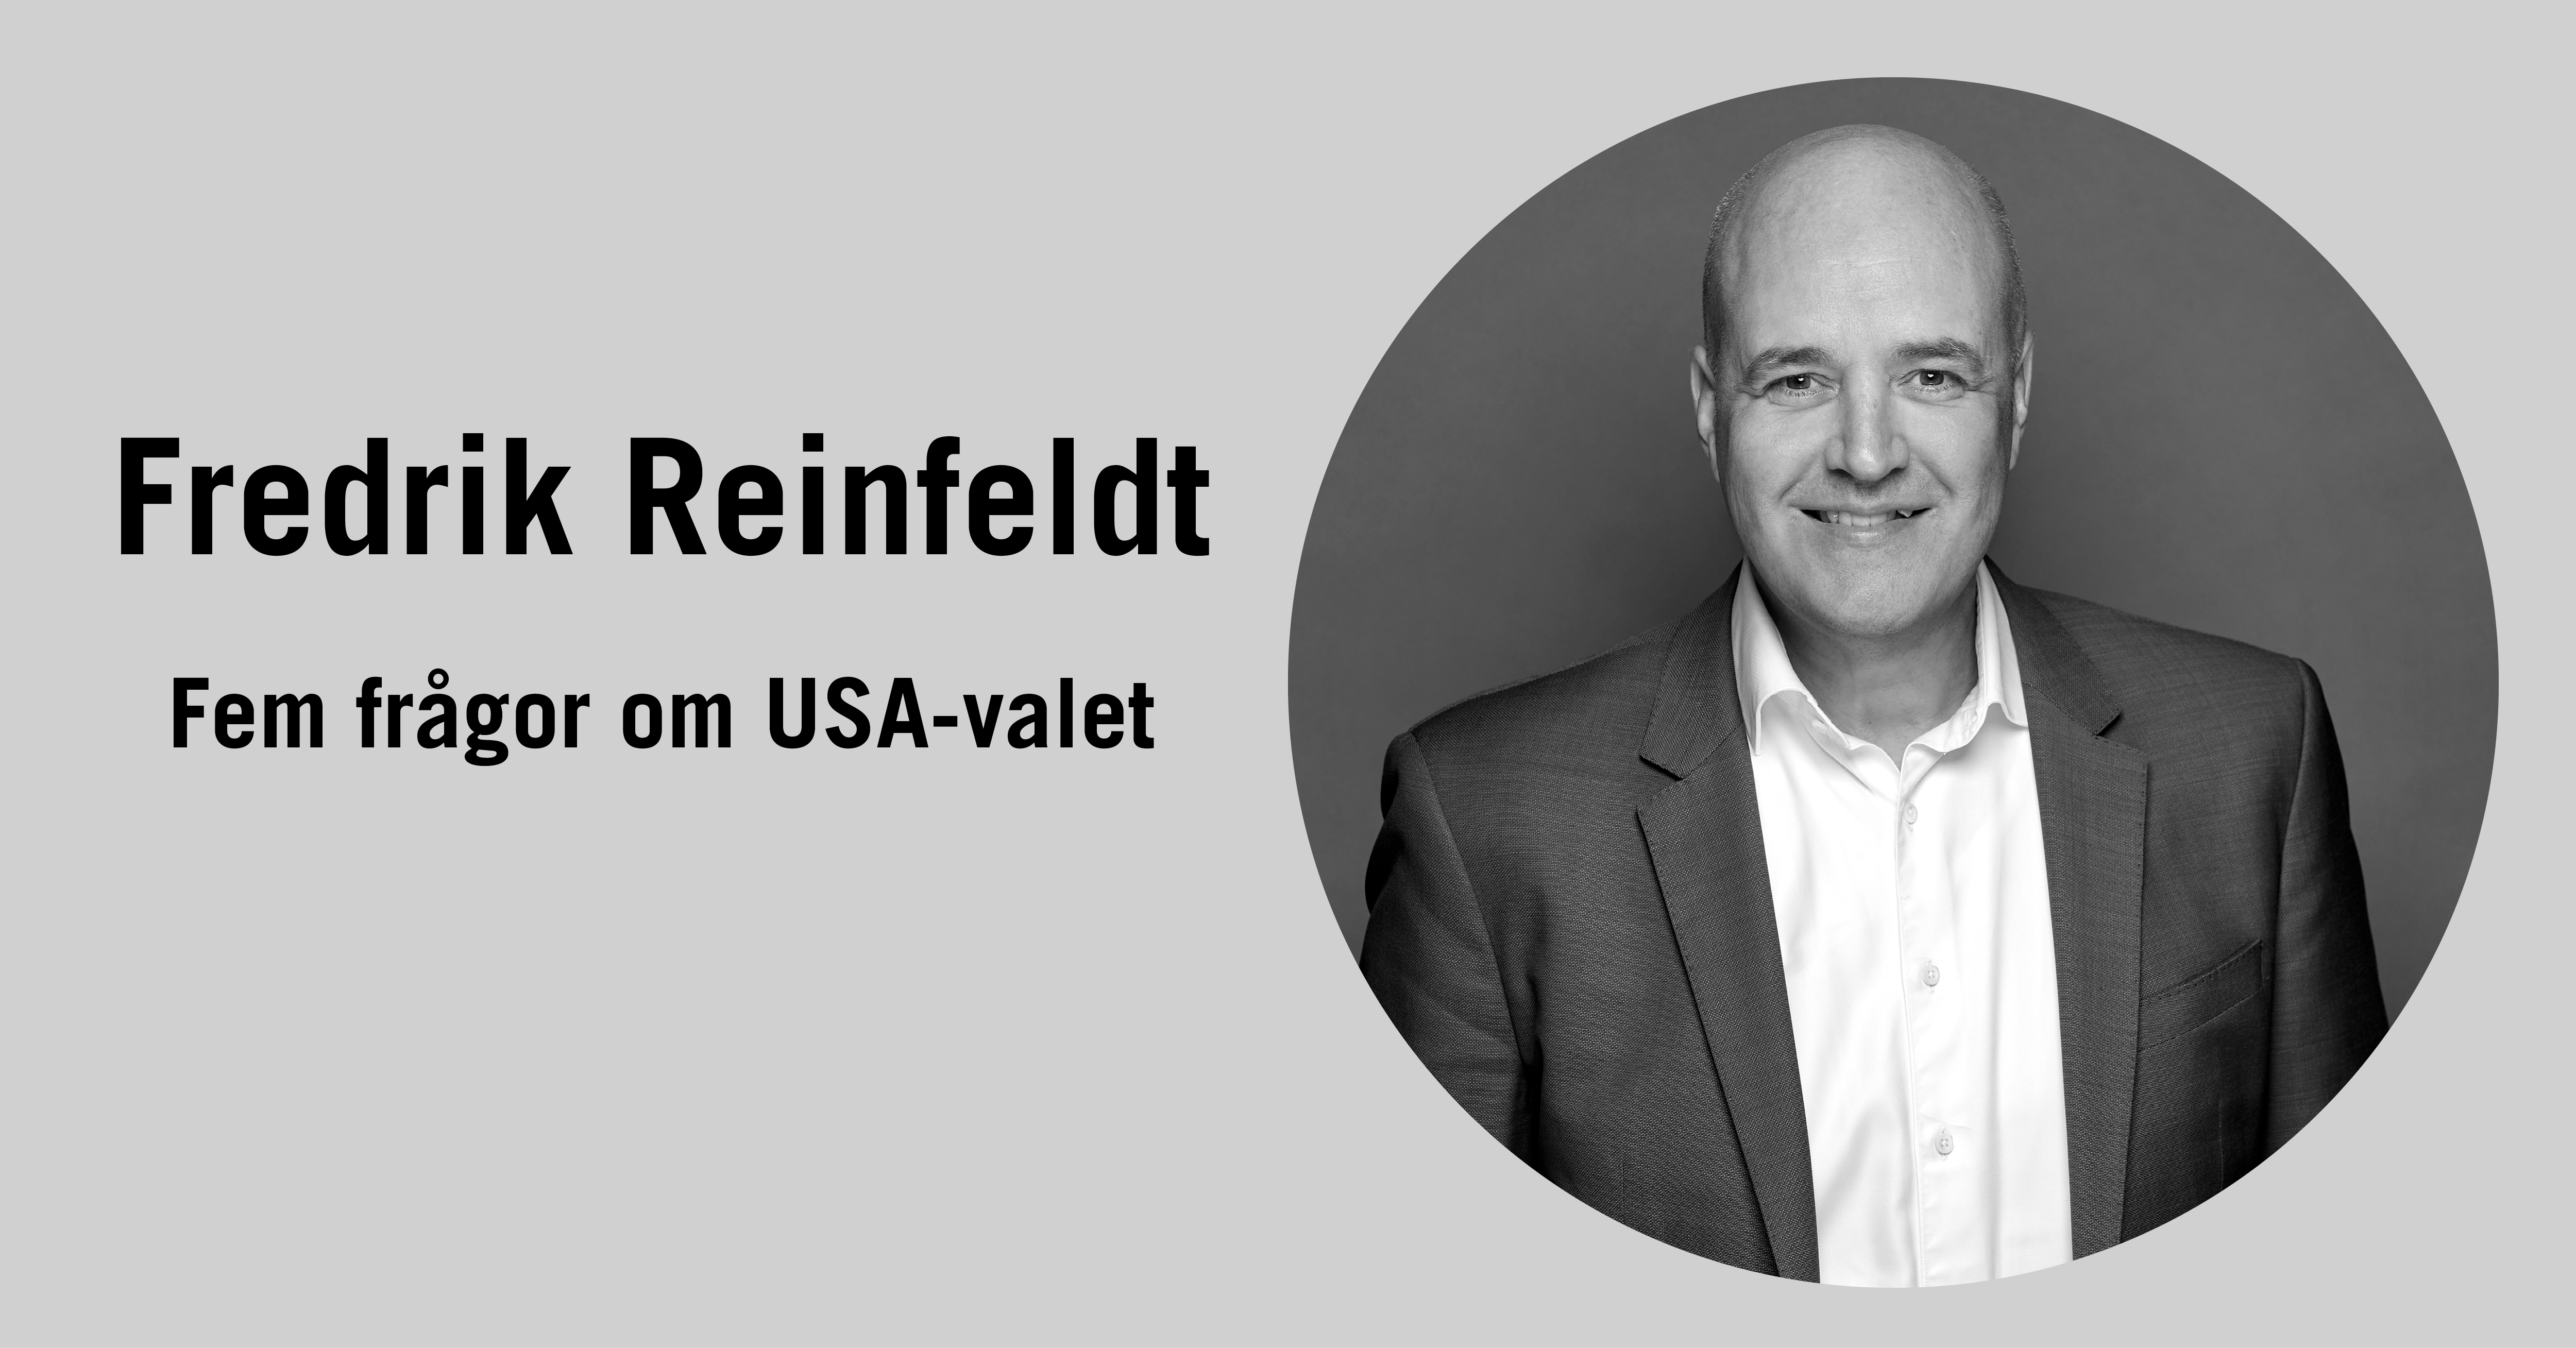 Fredrik Reinfeldts reflektioner om USA-valet